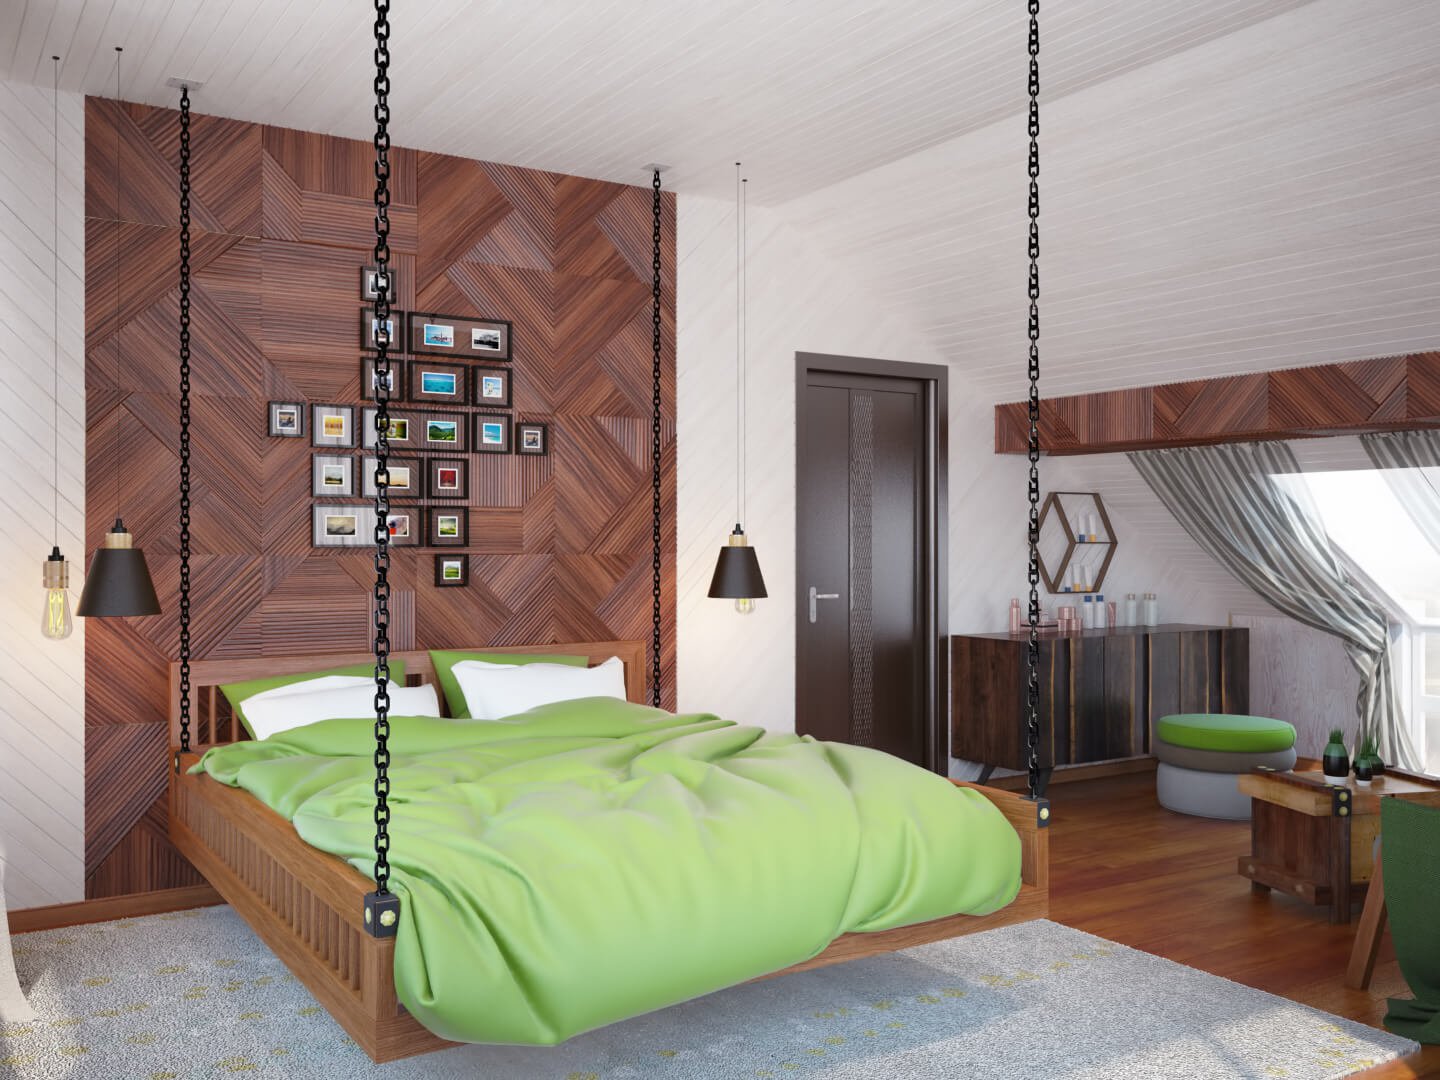 Дизайн спальни кровать и диван